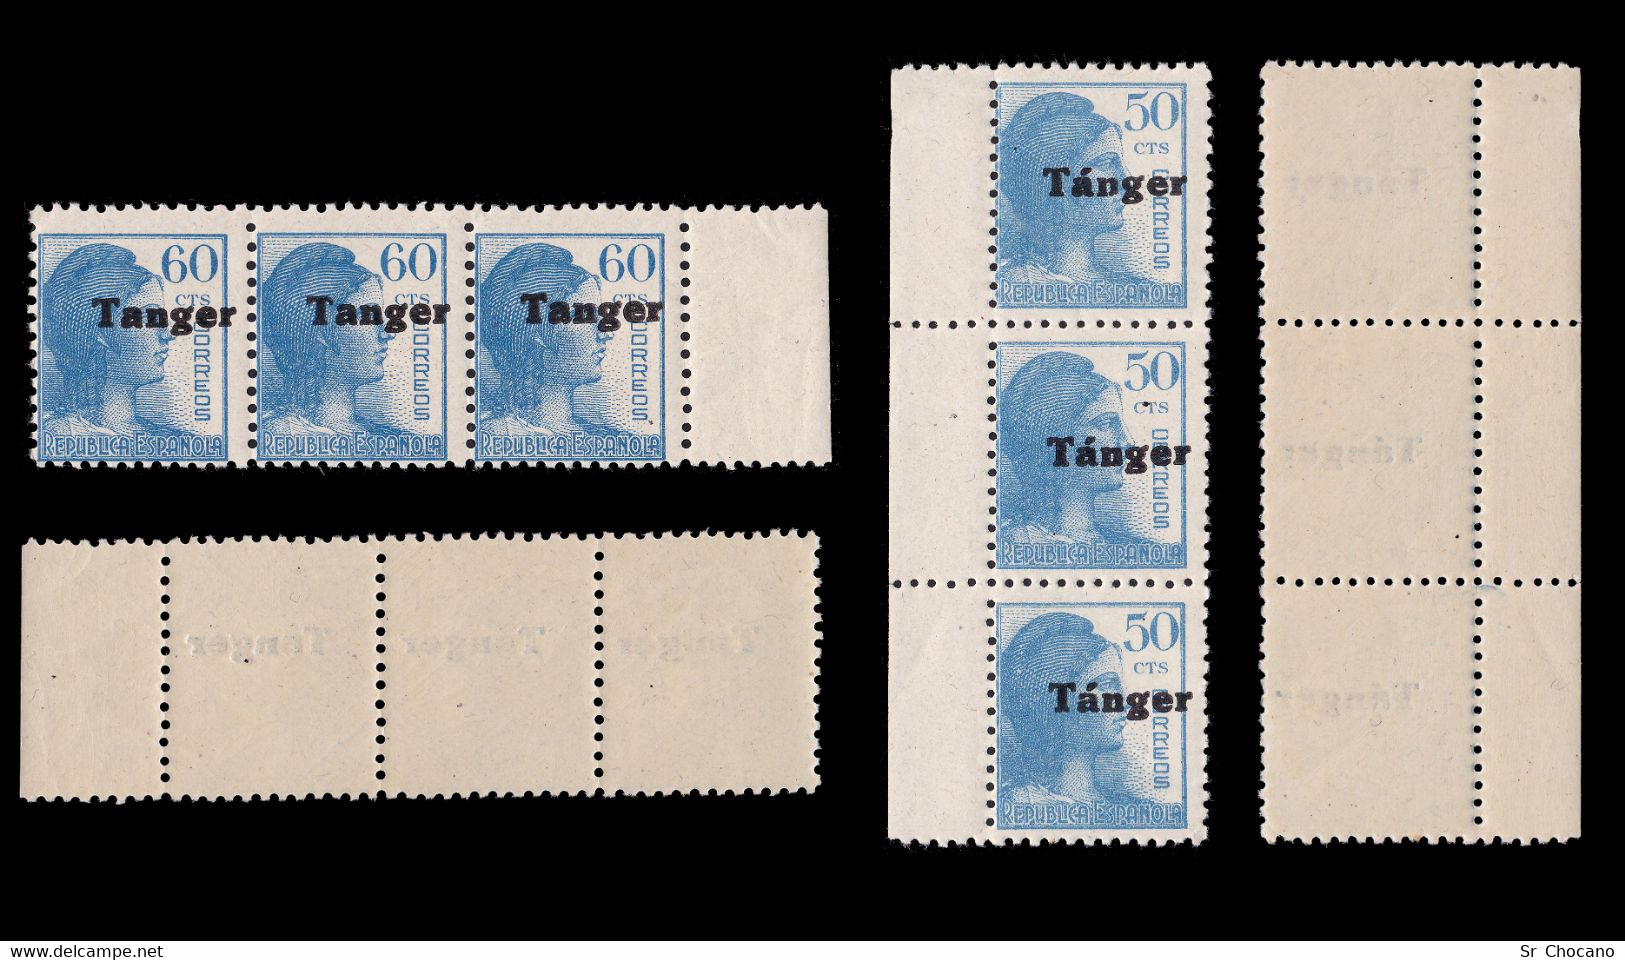 TANGER.1939.España Habilitado.10.Blq3.MNH.Edifil 114-123 - Mariana Islands